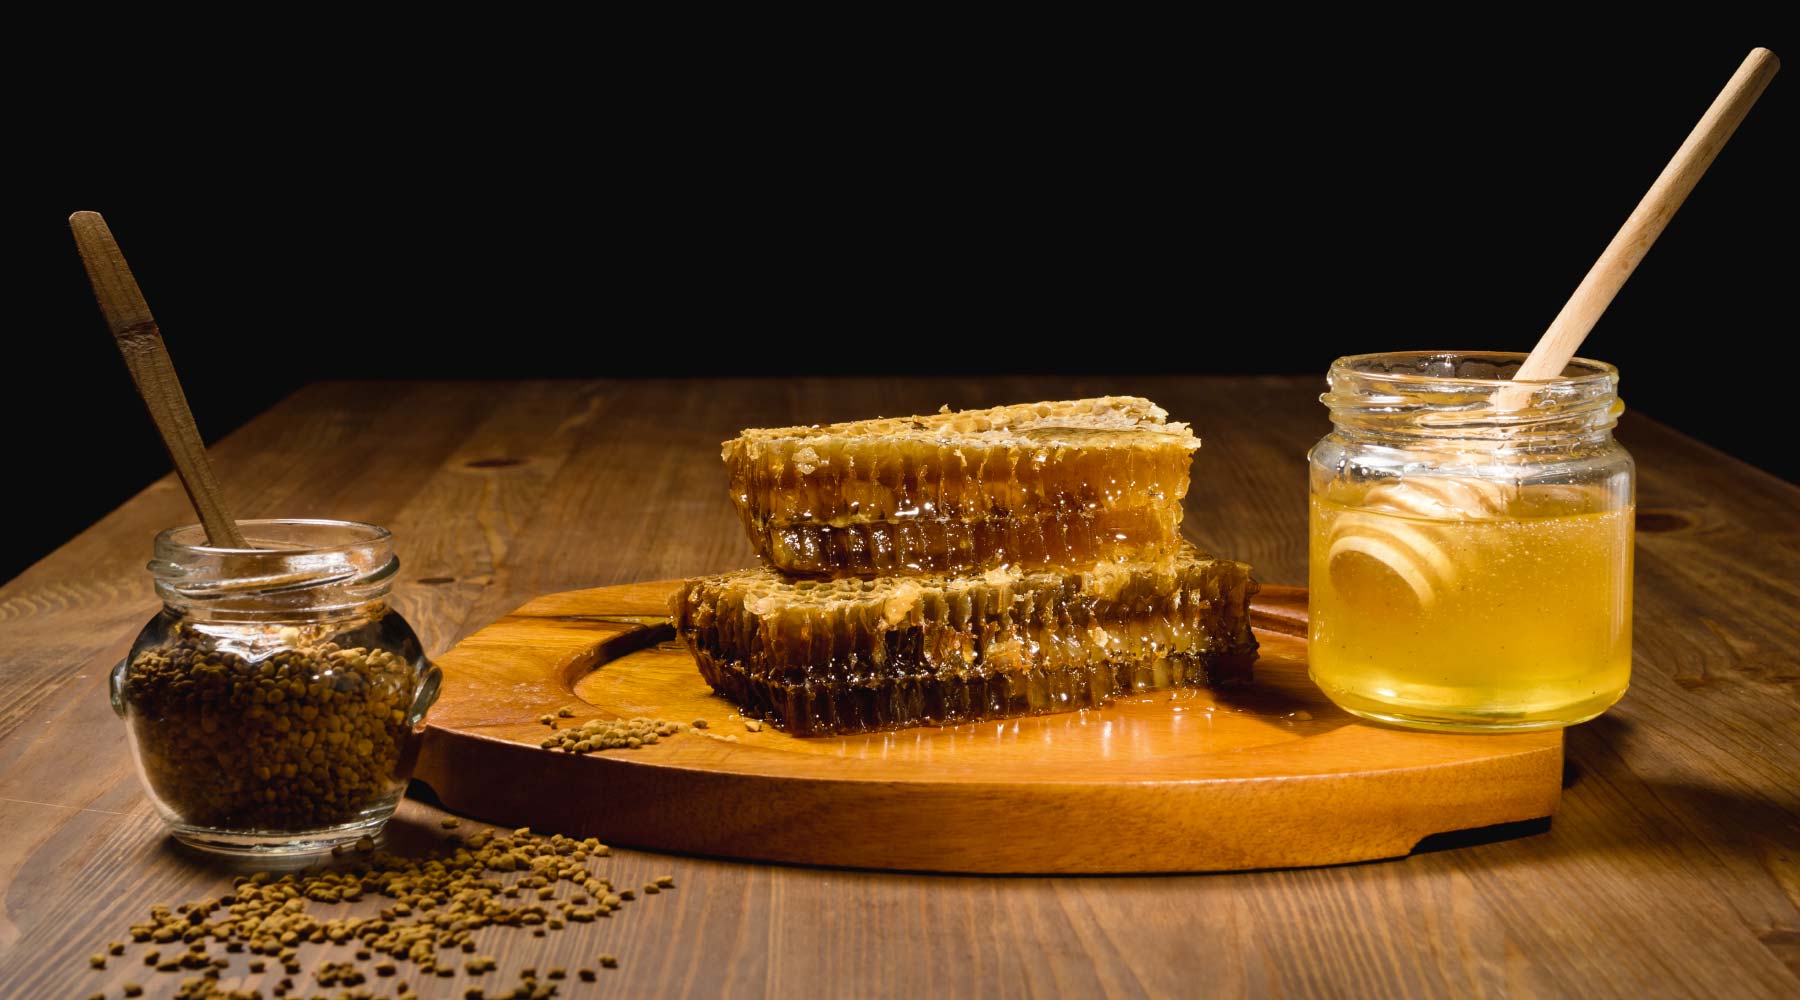 Loaded Oats with Manuka Honey recipe